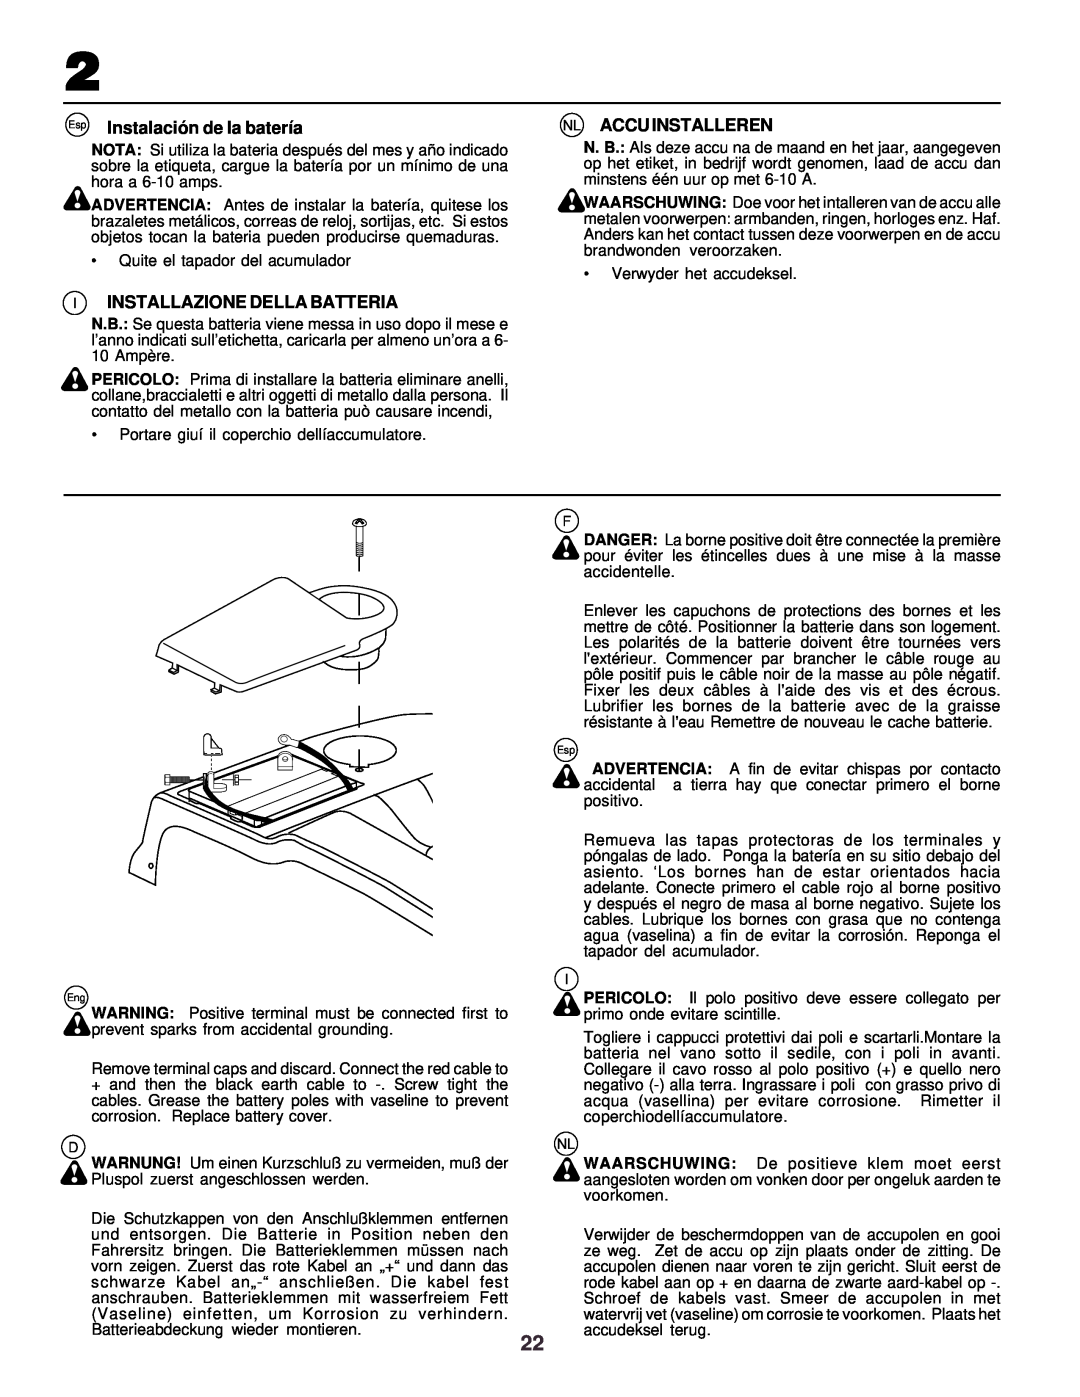 Husqvarna CTH130 instruction manual I Installazione Della Batteria, Nl Accu Installeren, Instalació n de la batería 